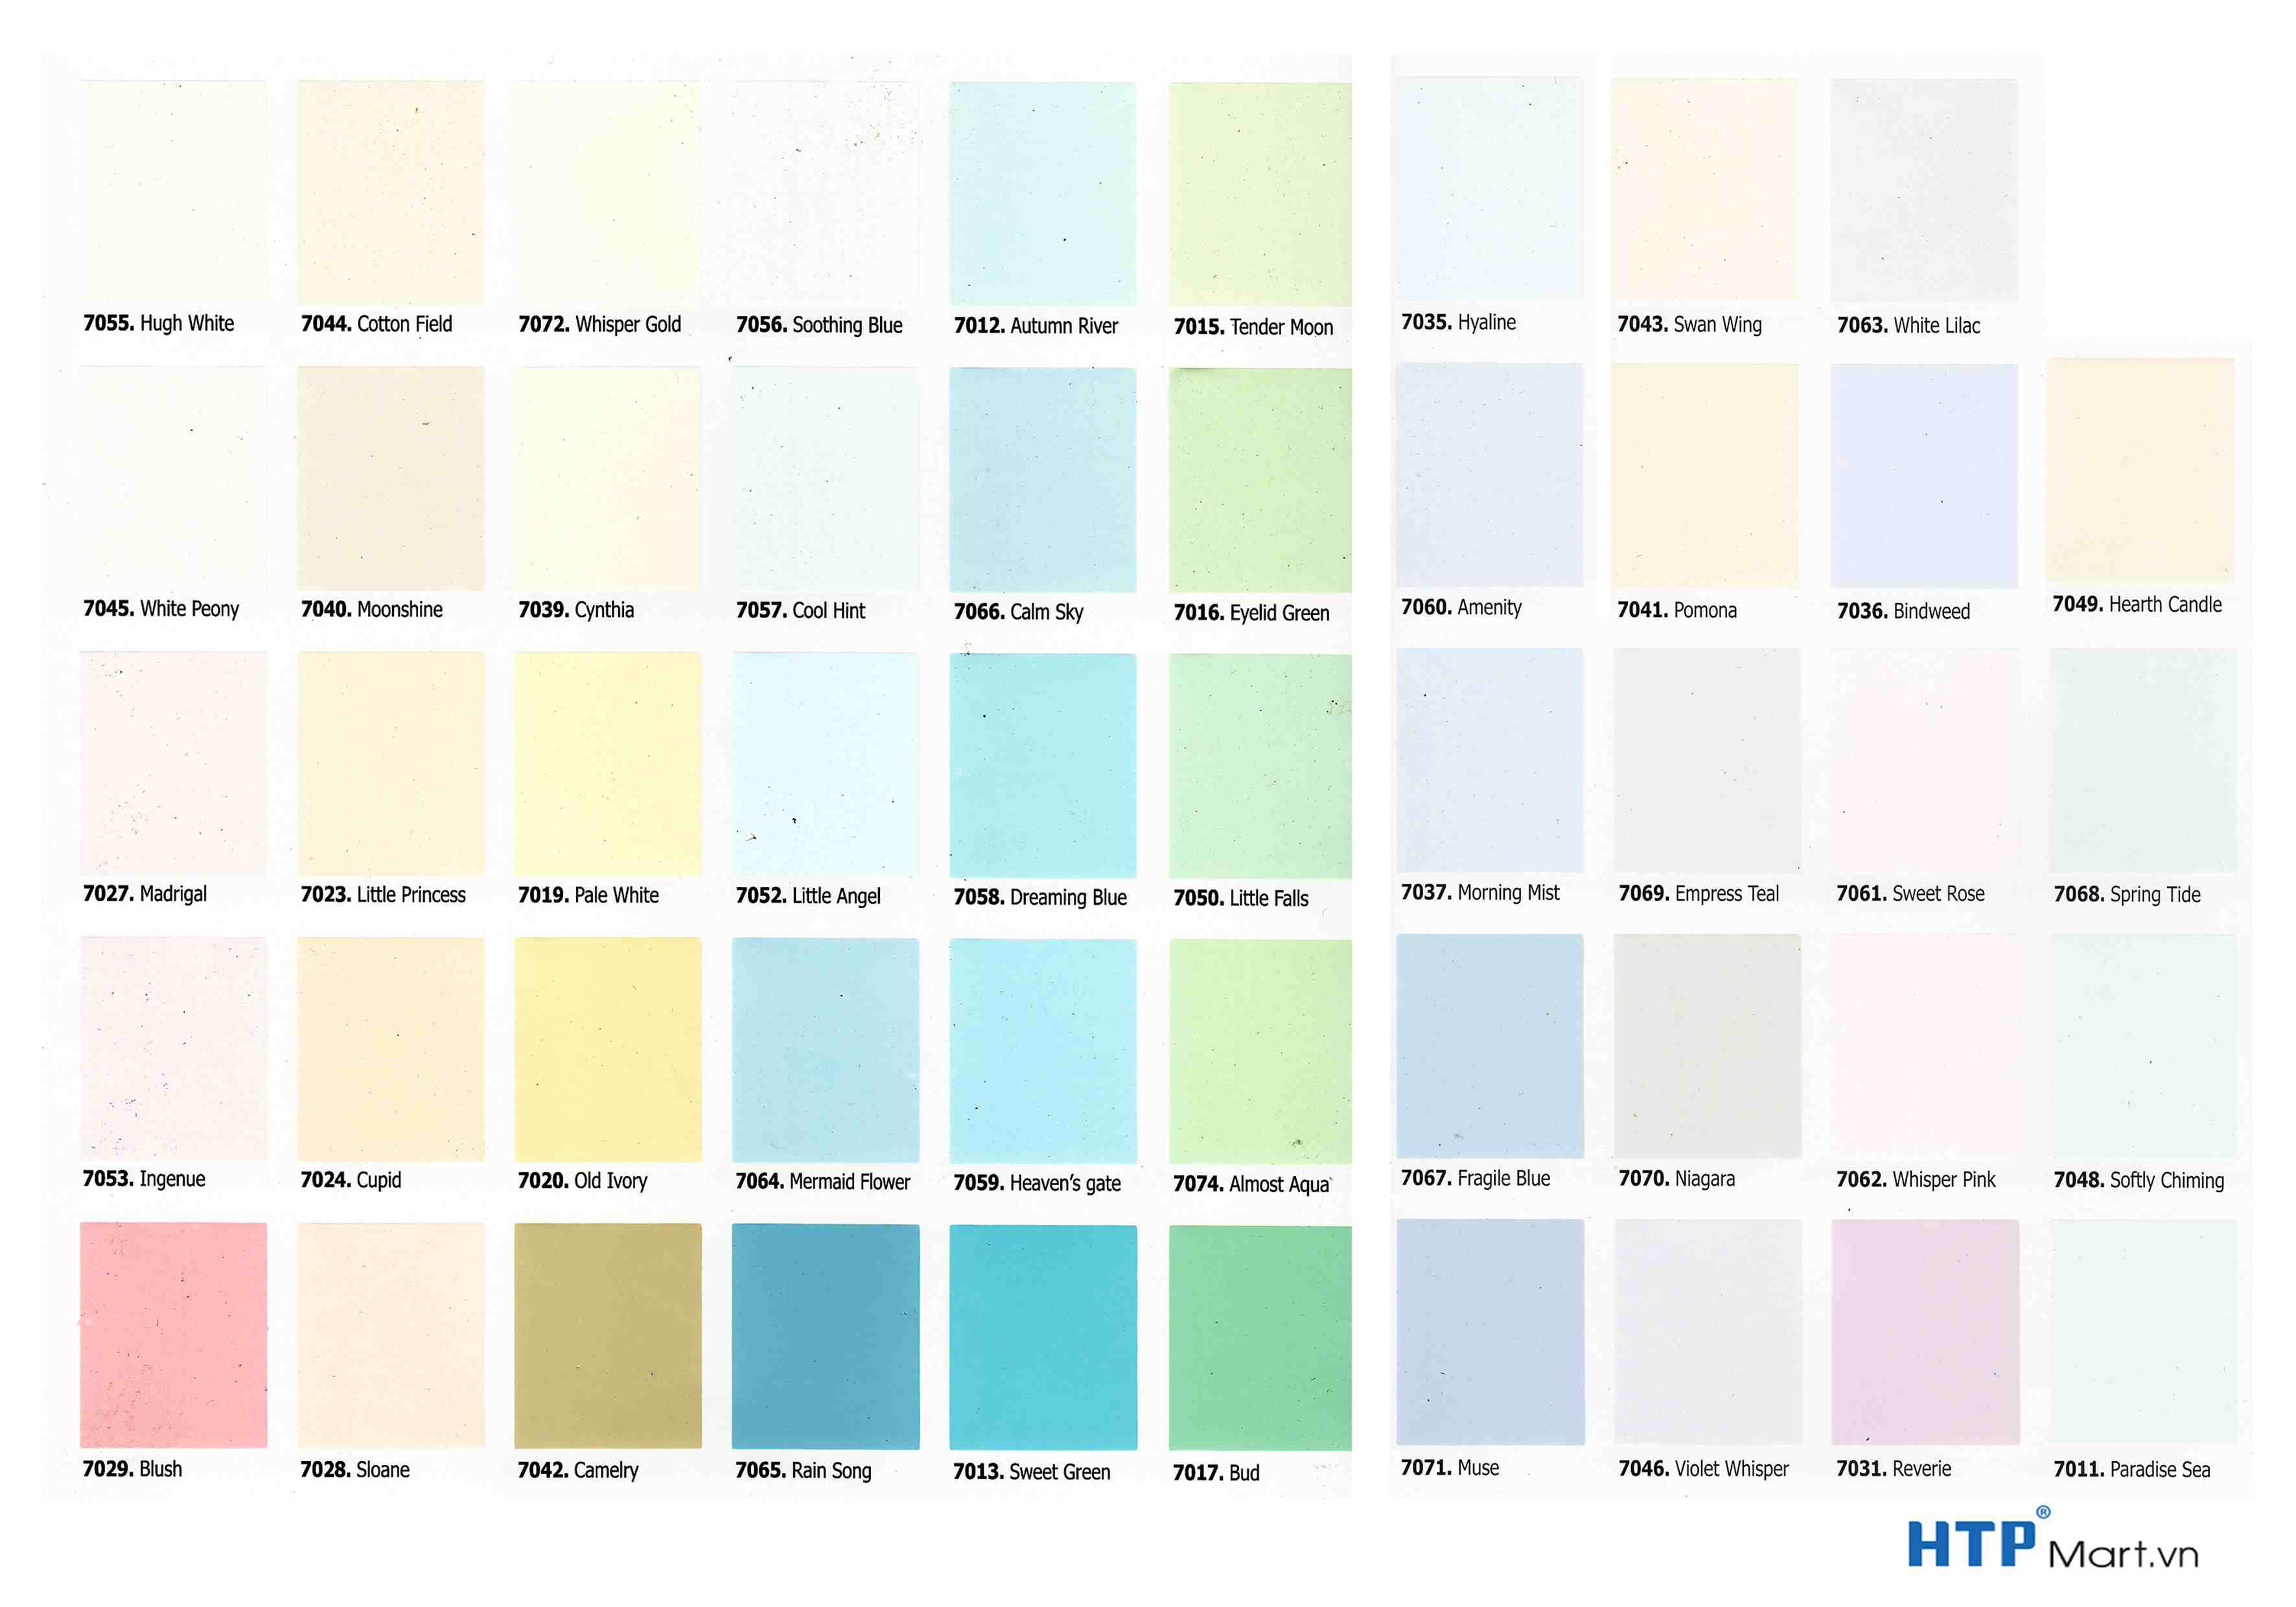 Bạn đang tìm cách để tô điểm cho không gian nhà của mình? Hãy tìm hiểu về bảng màu sơn nội thất để chọn được màu sắc hoàn hảo! Những gam màu đẹp mắt, sáng tạo trên bảng màu sẽ giúp cho không gian của bạn trở nên độc đáo và sang trọng hơn.